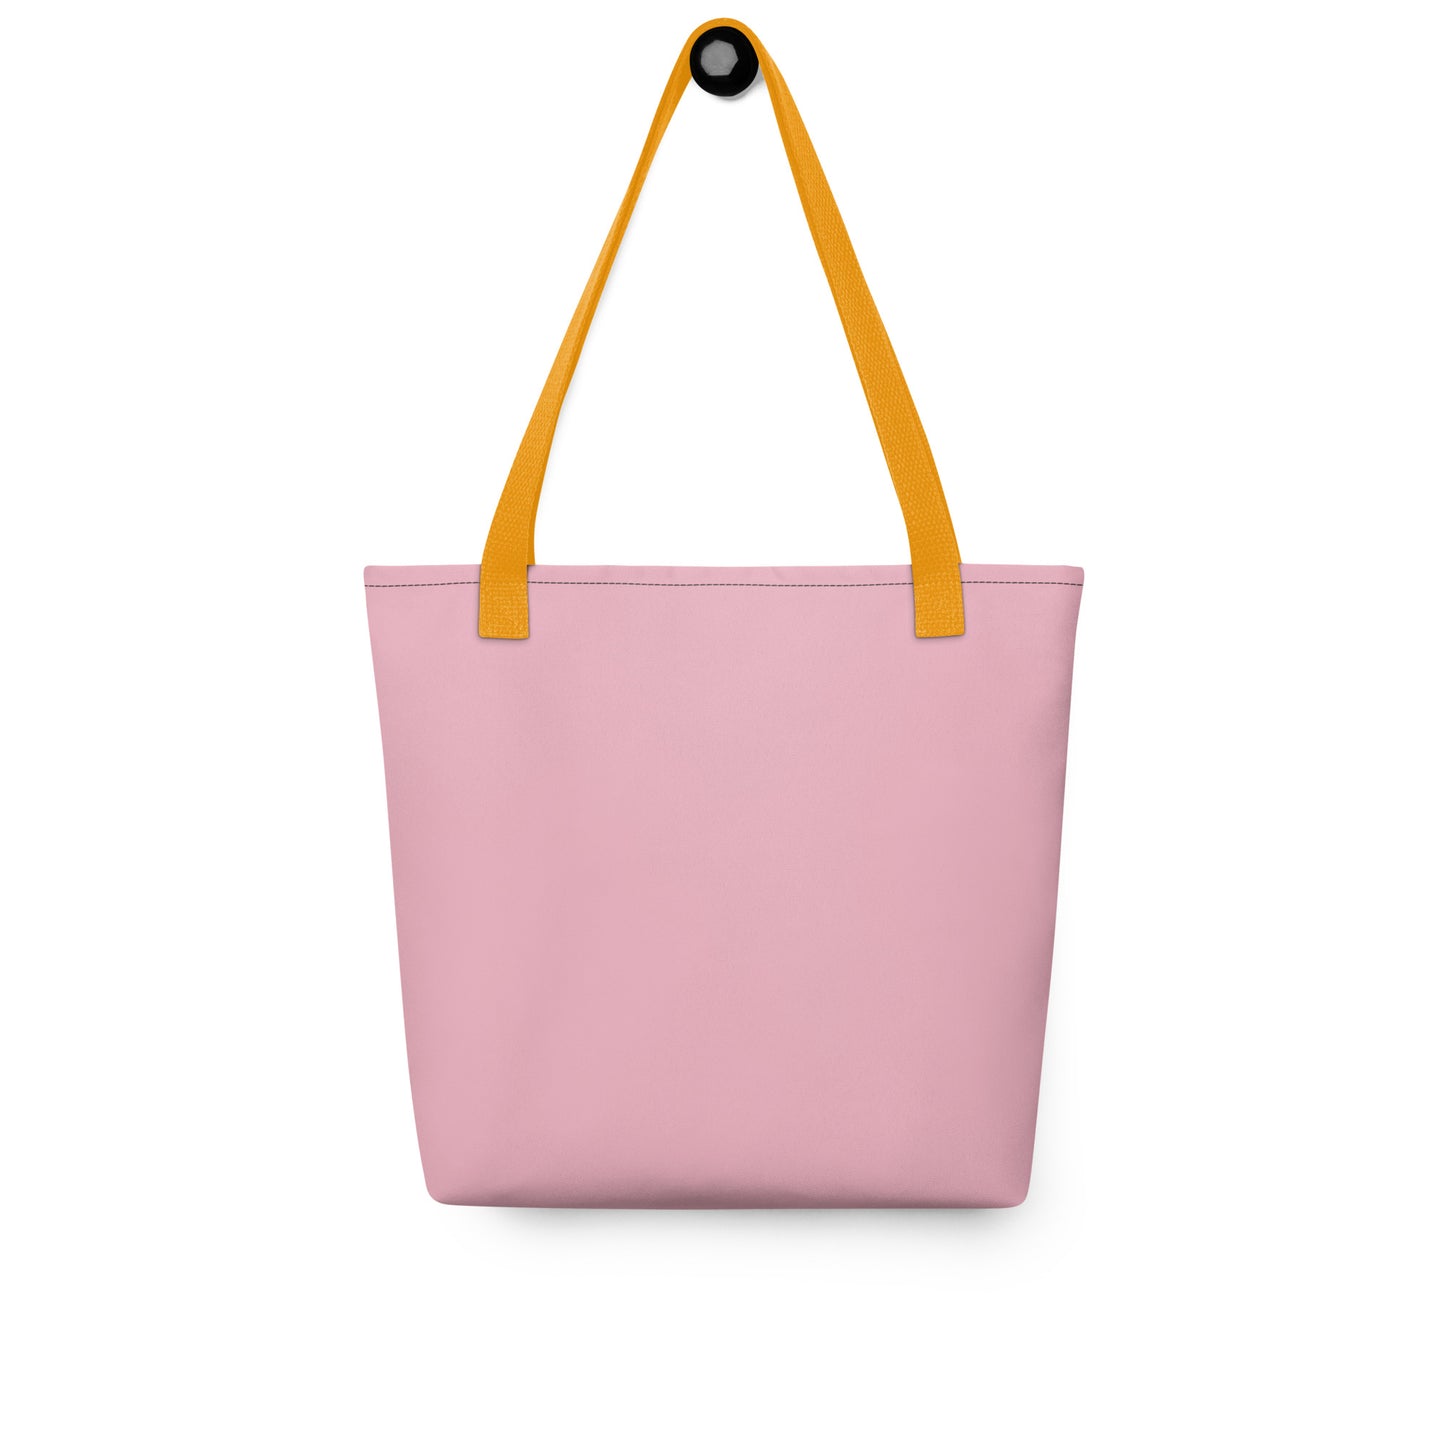 Tote Pink Bag